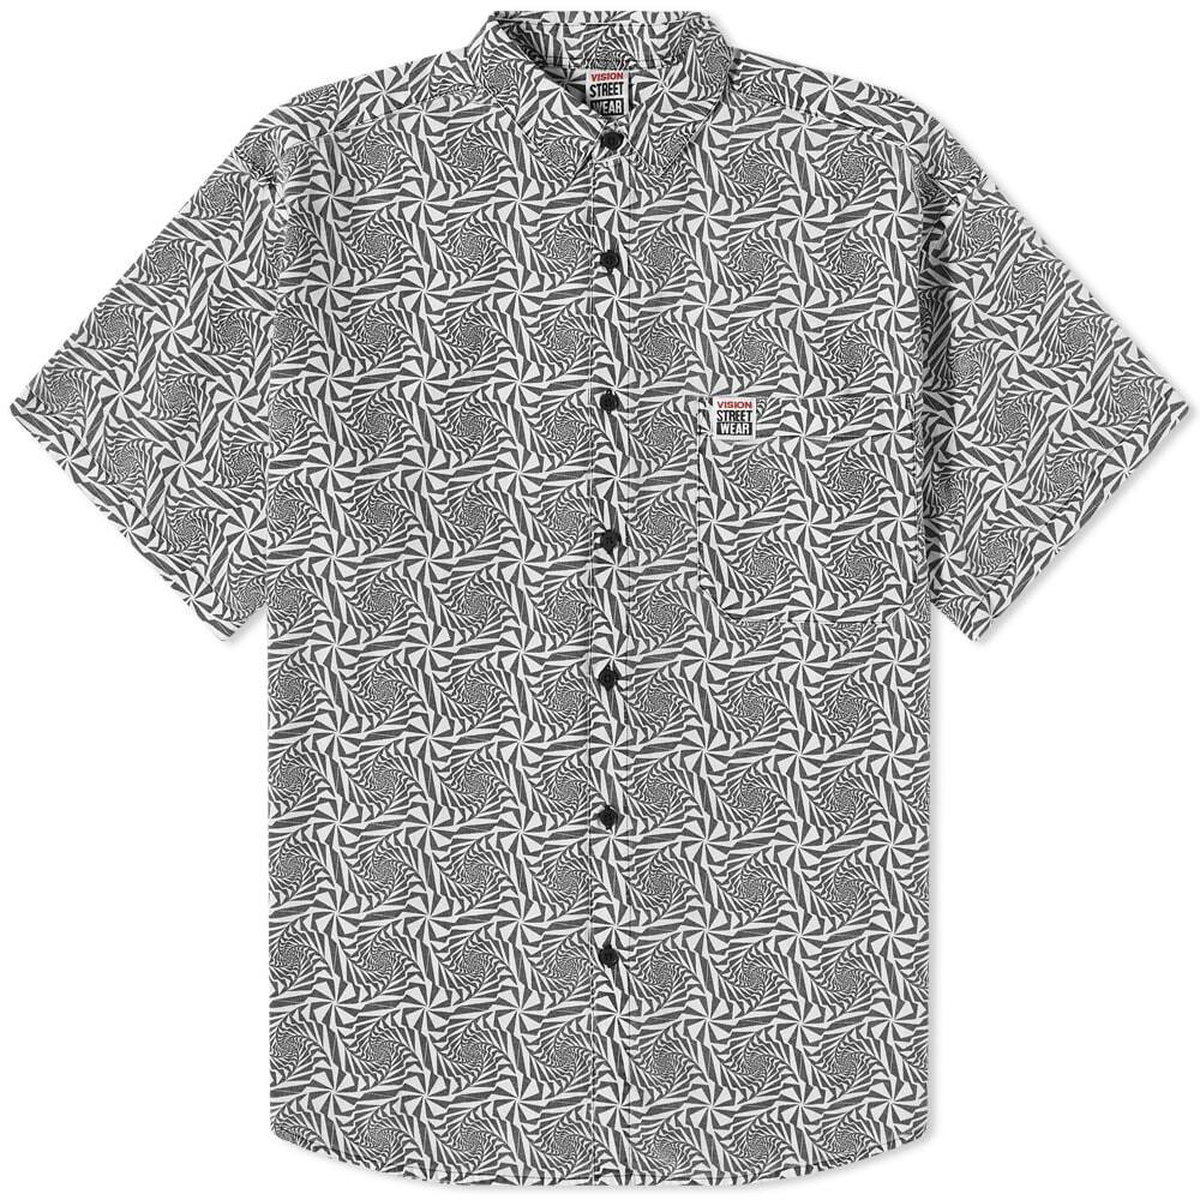 Vision Streetwear OG Spiral Short Sleeve Shirt